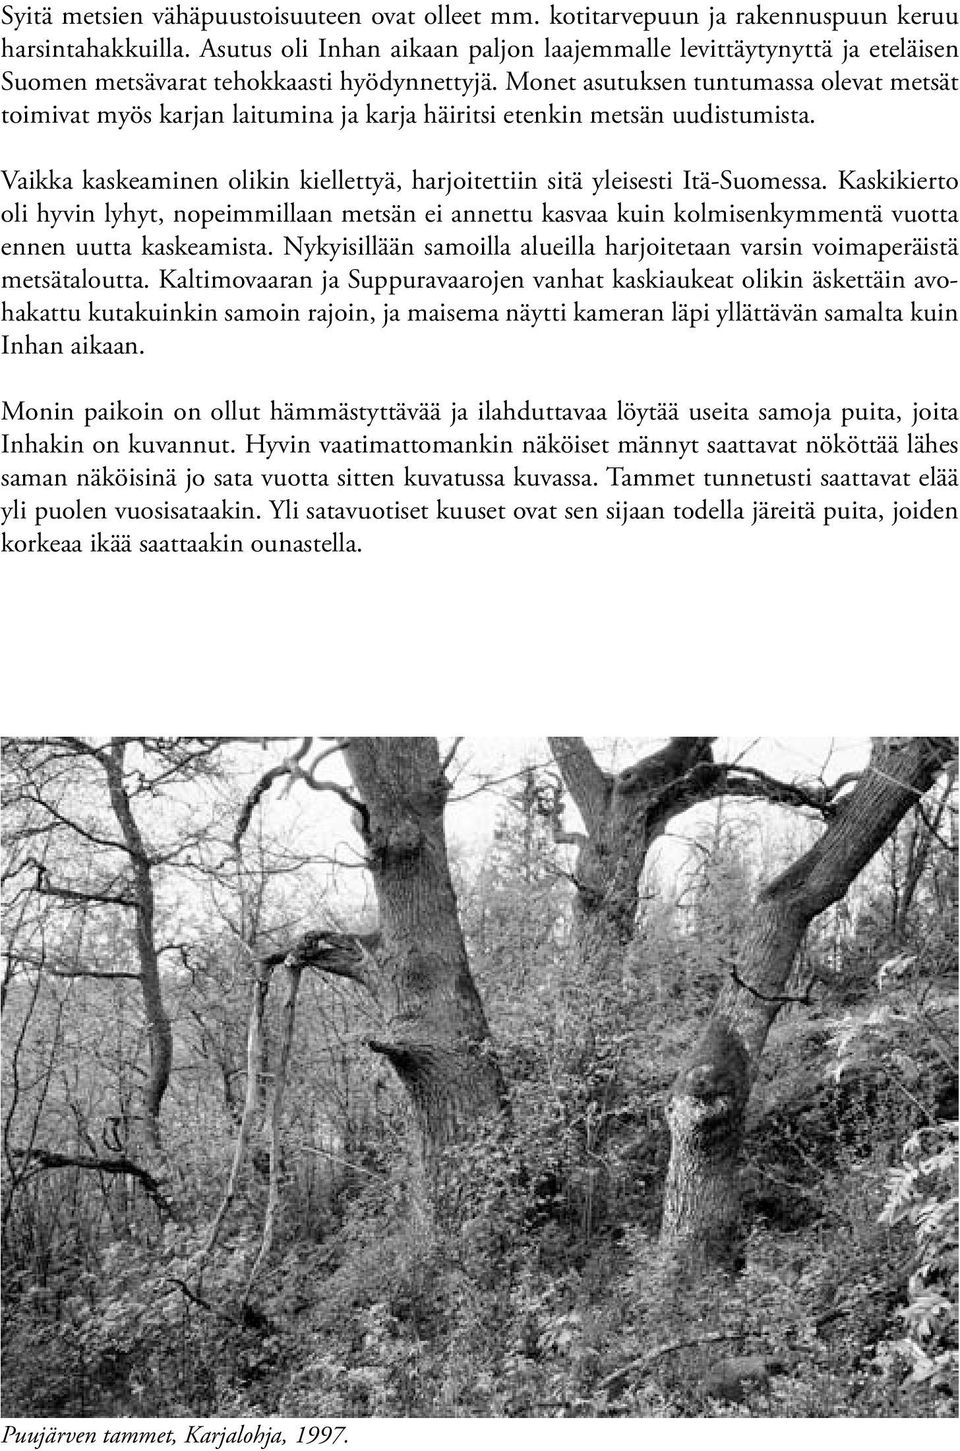 Monet asutuksen tuntumassa olevat metsät toimivat myös karjan laitumina ja karja häiritsi etenkin metsän uudistumista. Vaikka kaskeaminen olikin kiellettyä, harjoitettiin sitä yleisesti Itä-Suomessa.